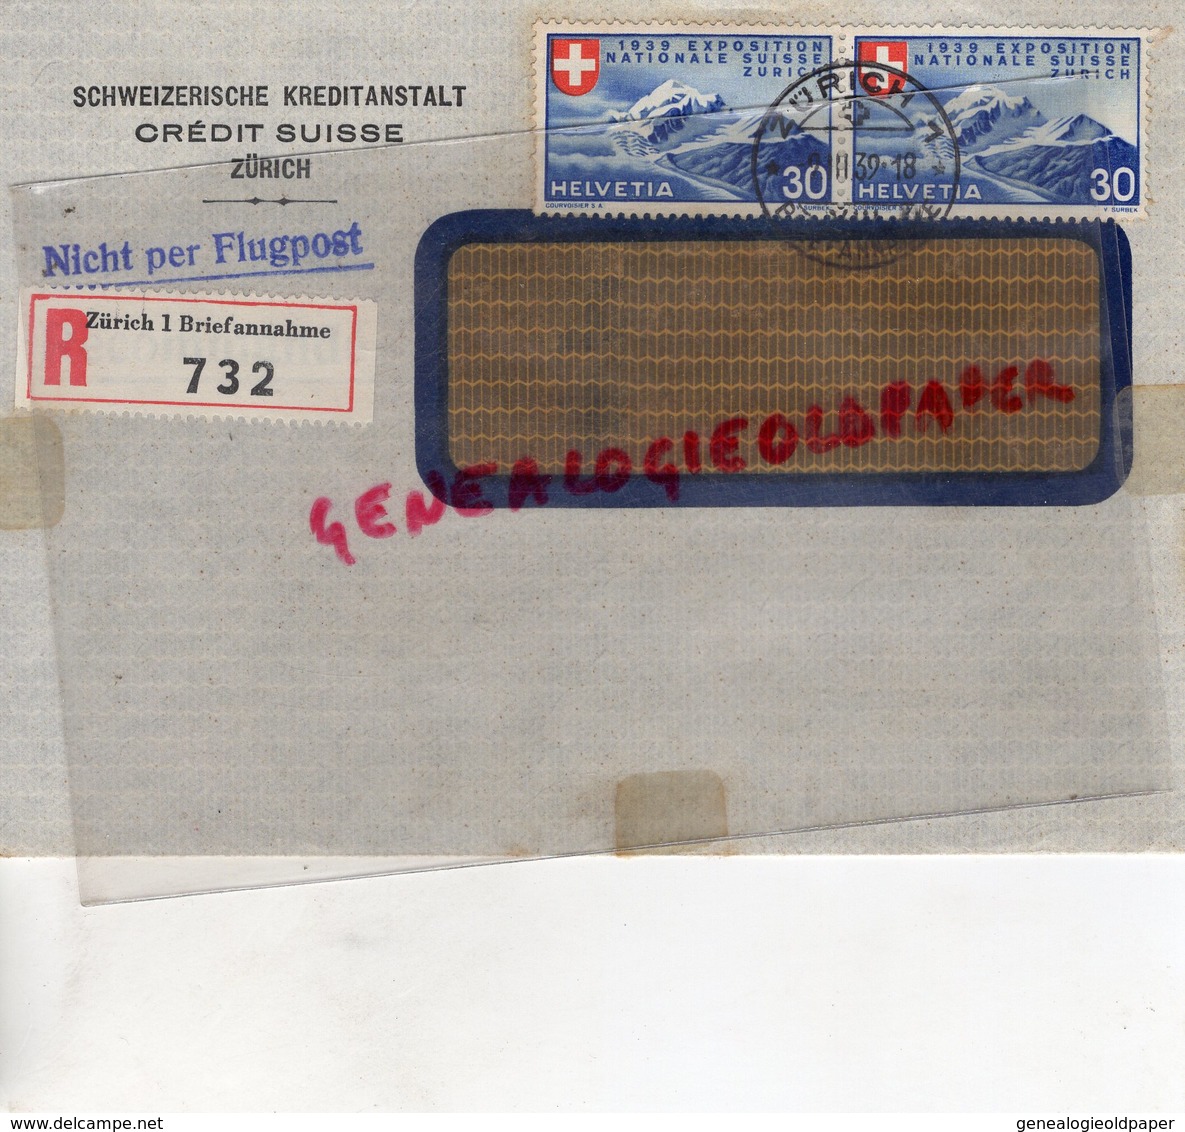 SUISSE - ZURICH- RARE ENVELOPPE SCHWEIZERISCHE KREDITANSTALT- CREDIT SUISSE -1939- NICHT PER FLUGPOST-SAINT JUNIEN 87 - Suisse